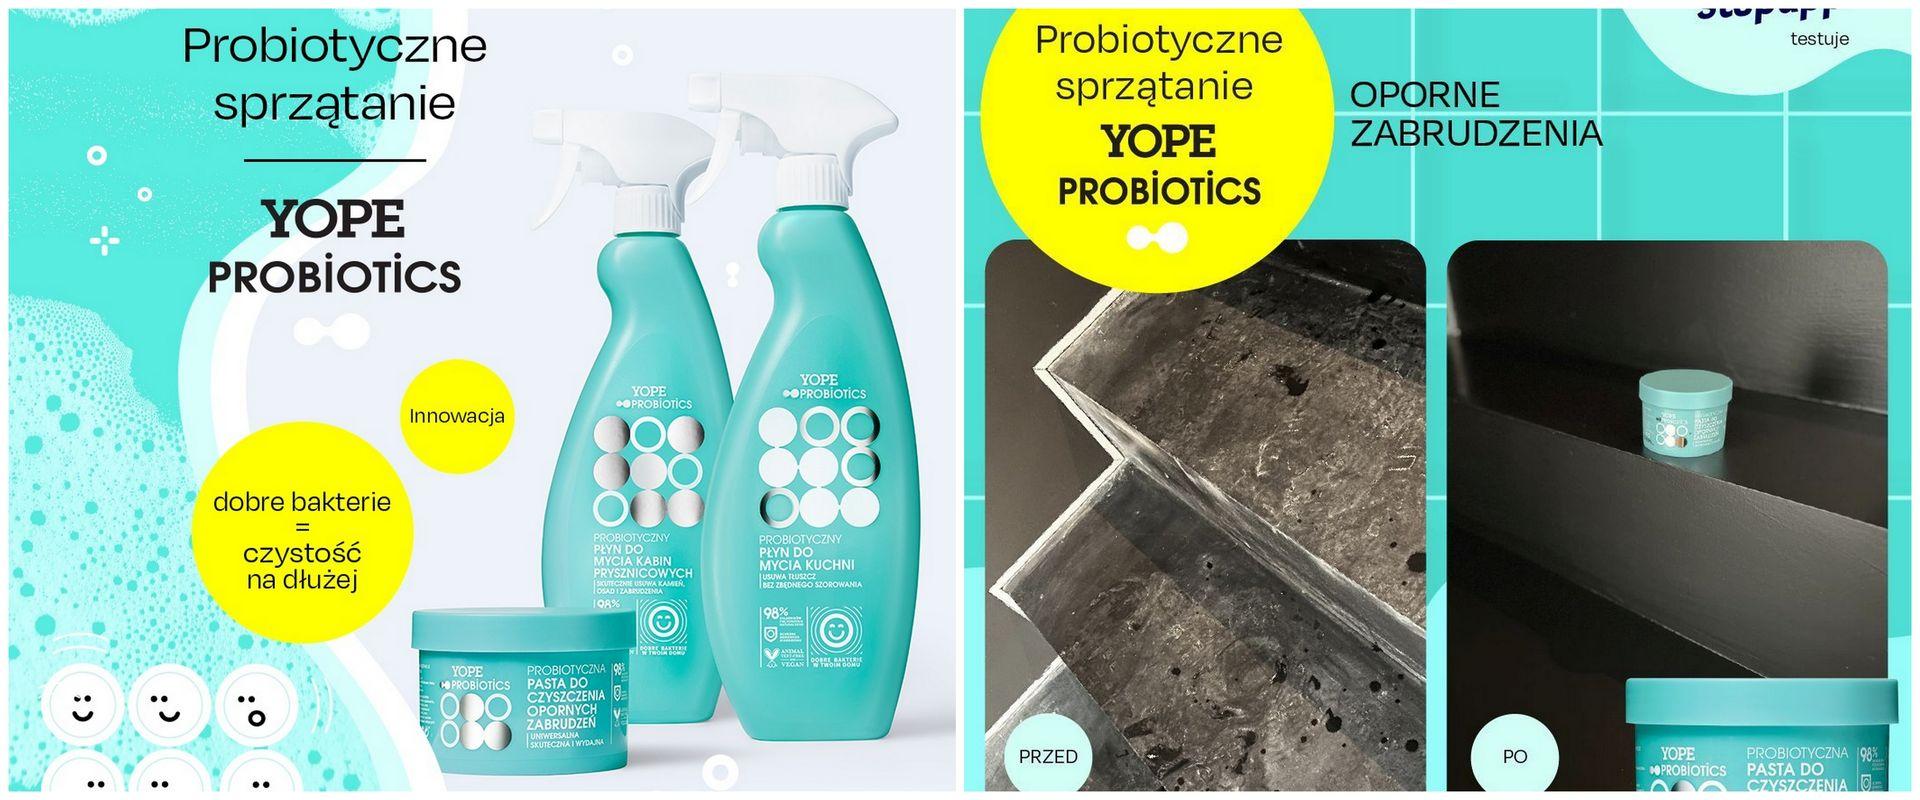 Yope Probiotics - sprzątanie zieloną chemią